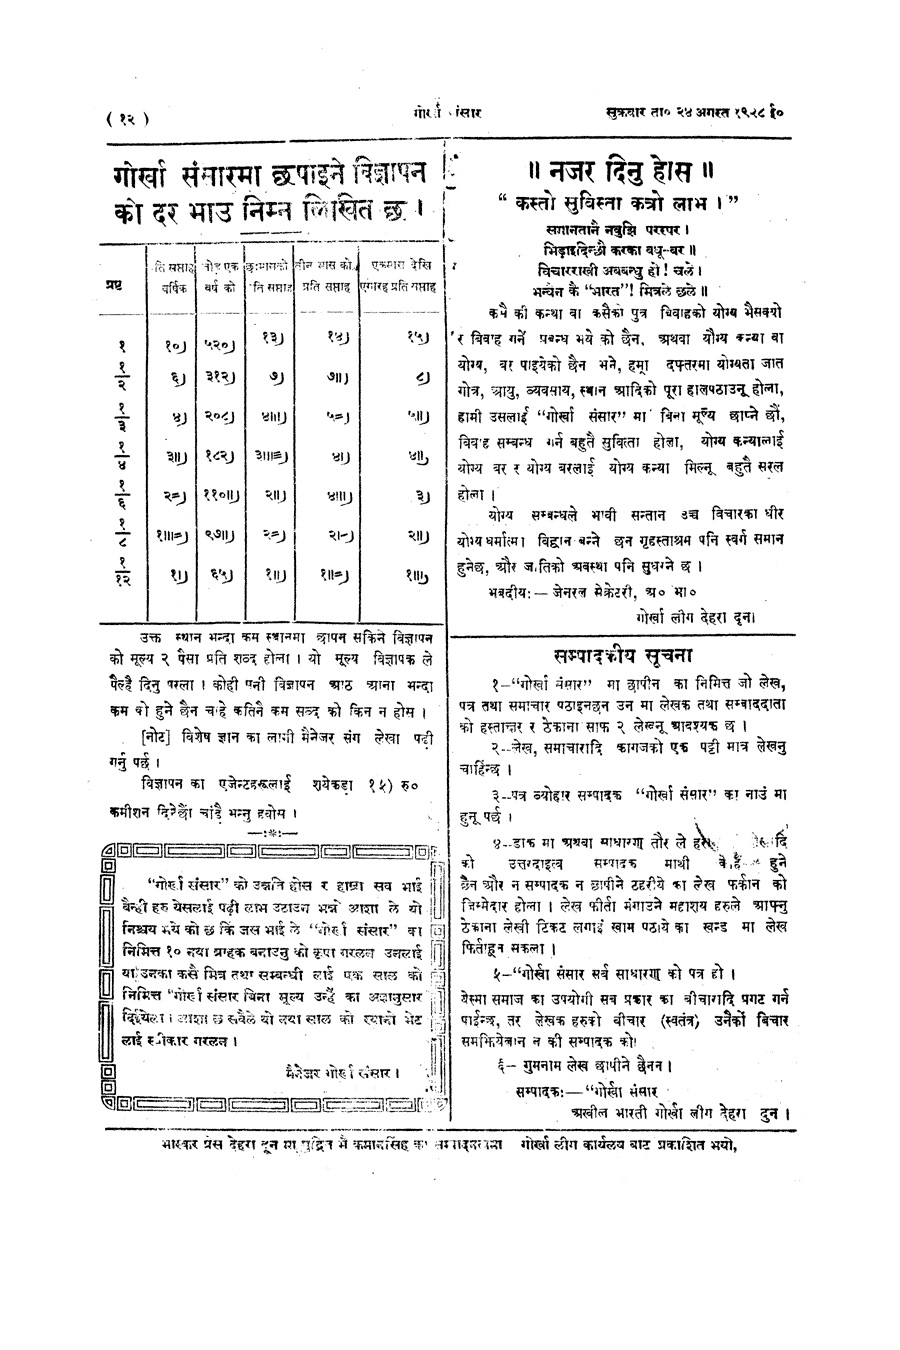 Gorkha Sansar, 24 Aug 1928, page 12